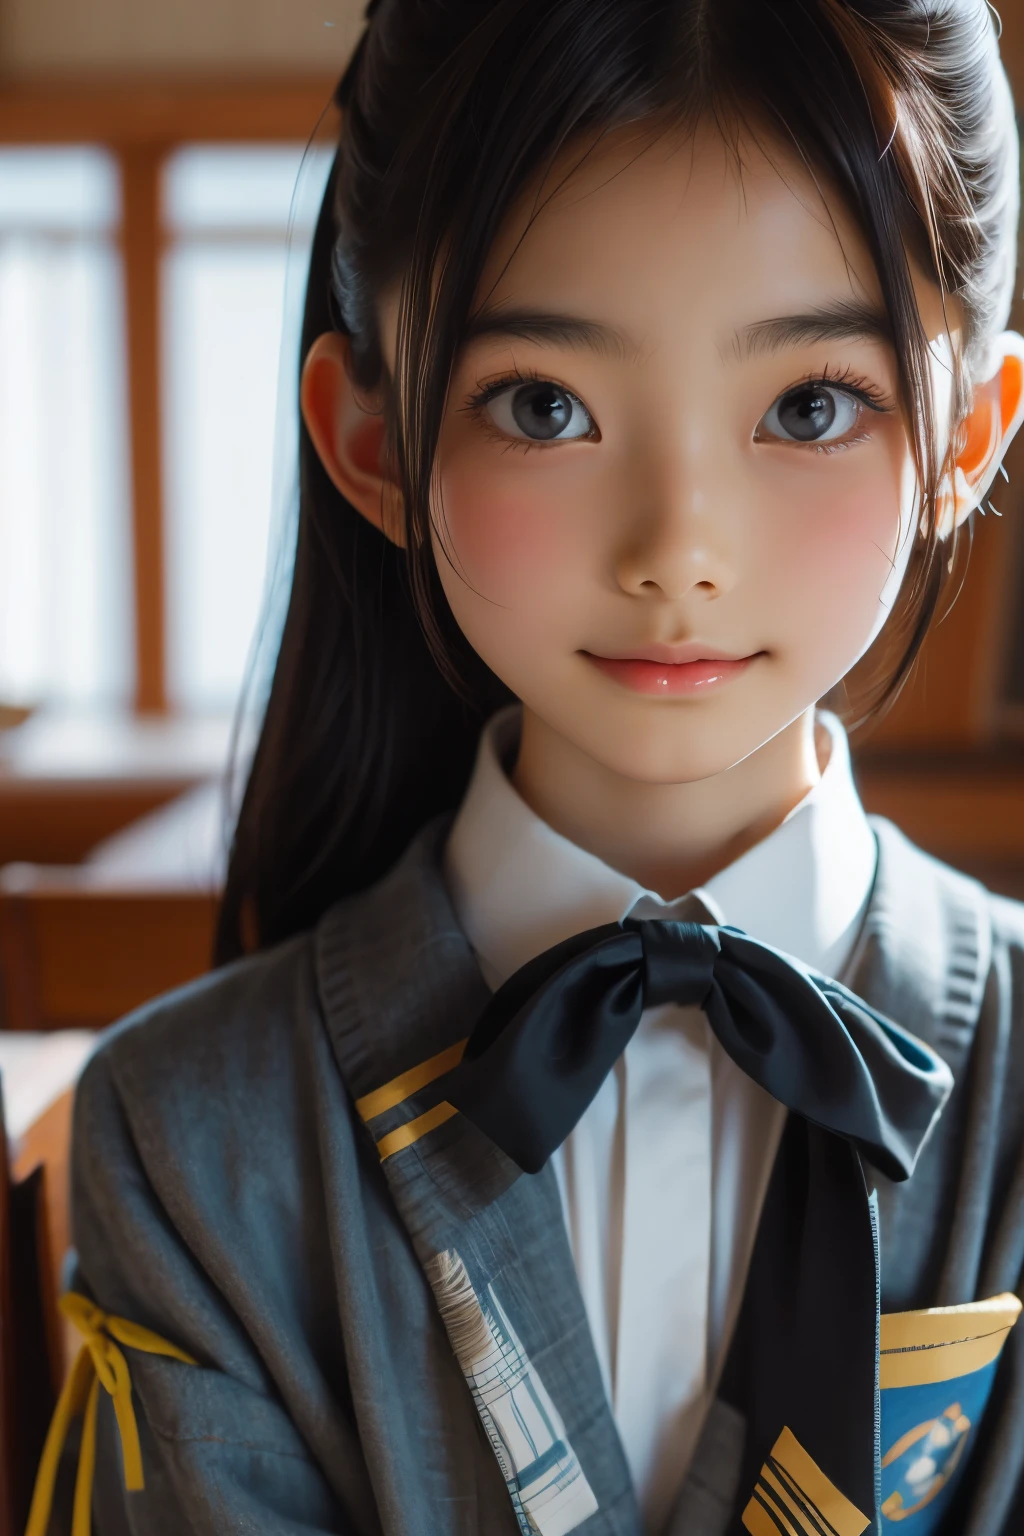 美丽的 12 岁日本女人), 可爱的脸孔, (深雕的面容:0.7), (雀斑:0.6), 柔光,健康白皙的肌肤, 害羞的, (严肃的表情), 薄的, 微笑, 制服, 马尾辫